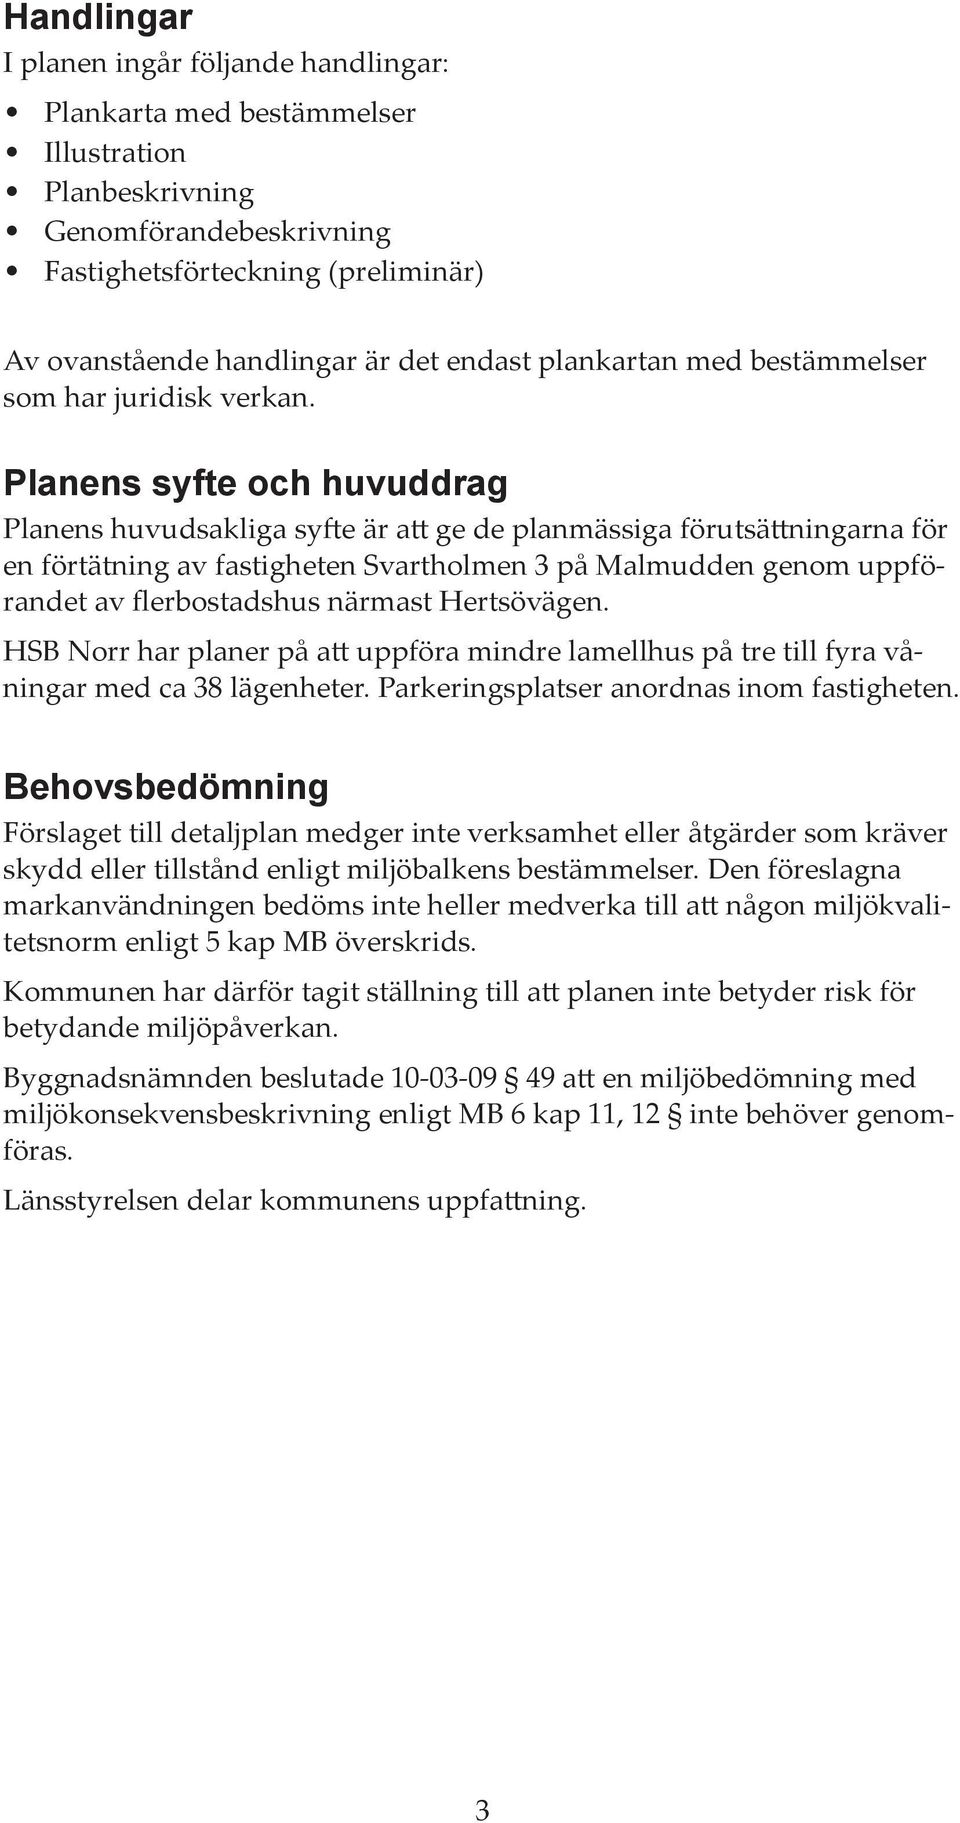 Planens syfte och huvuddrag Planens huvudsakliga syfte är att ge de planmässiga förutsättningarna för en förtätning av fastigheten Svartholmen 3 på Malmudden genom uppförandet av flerbostadshus